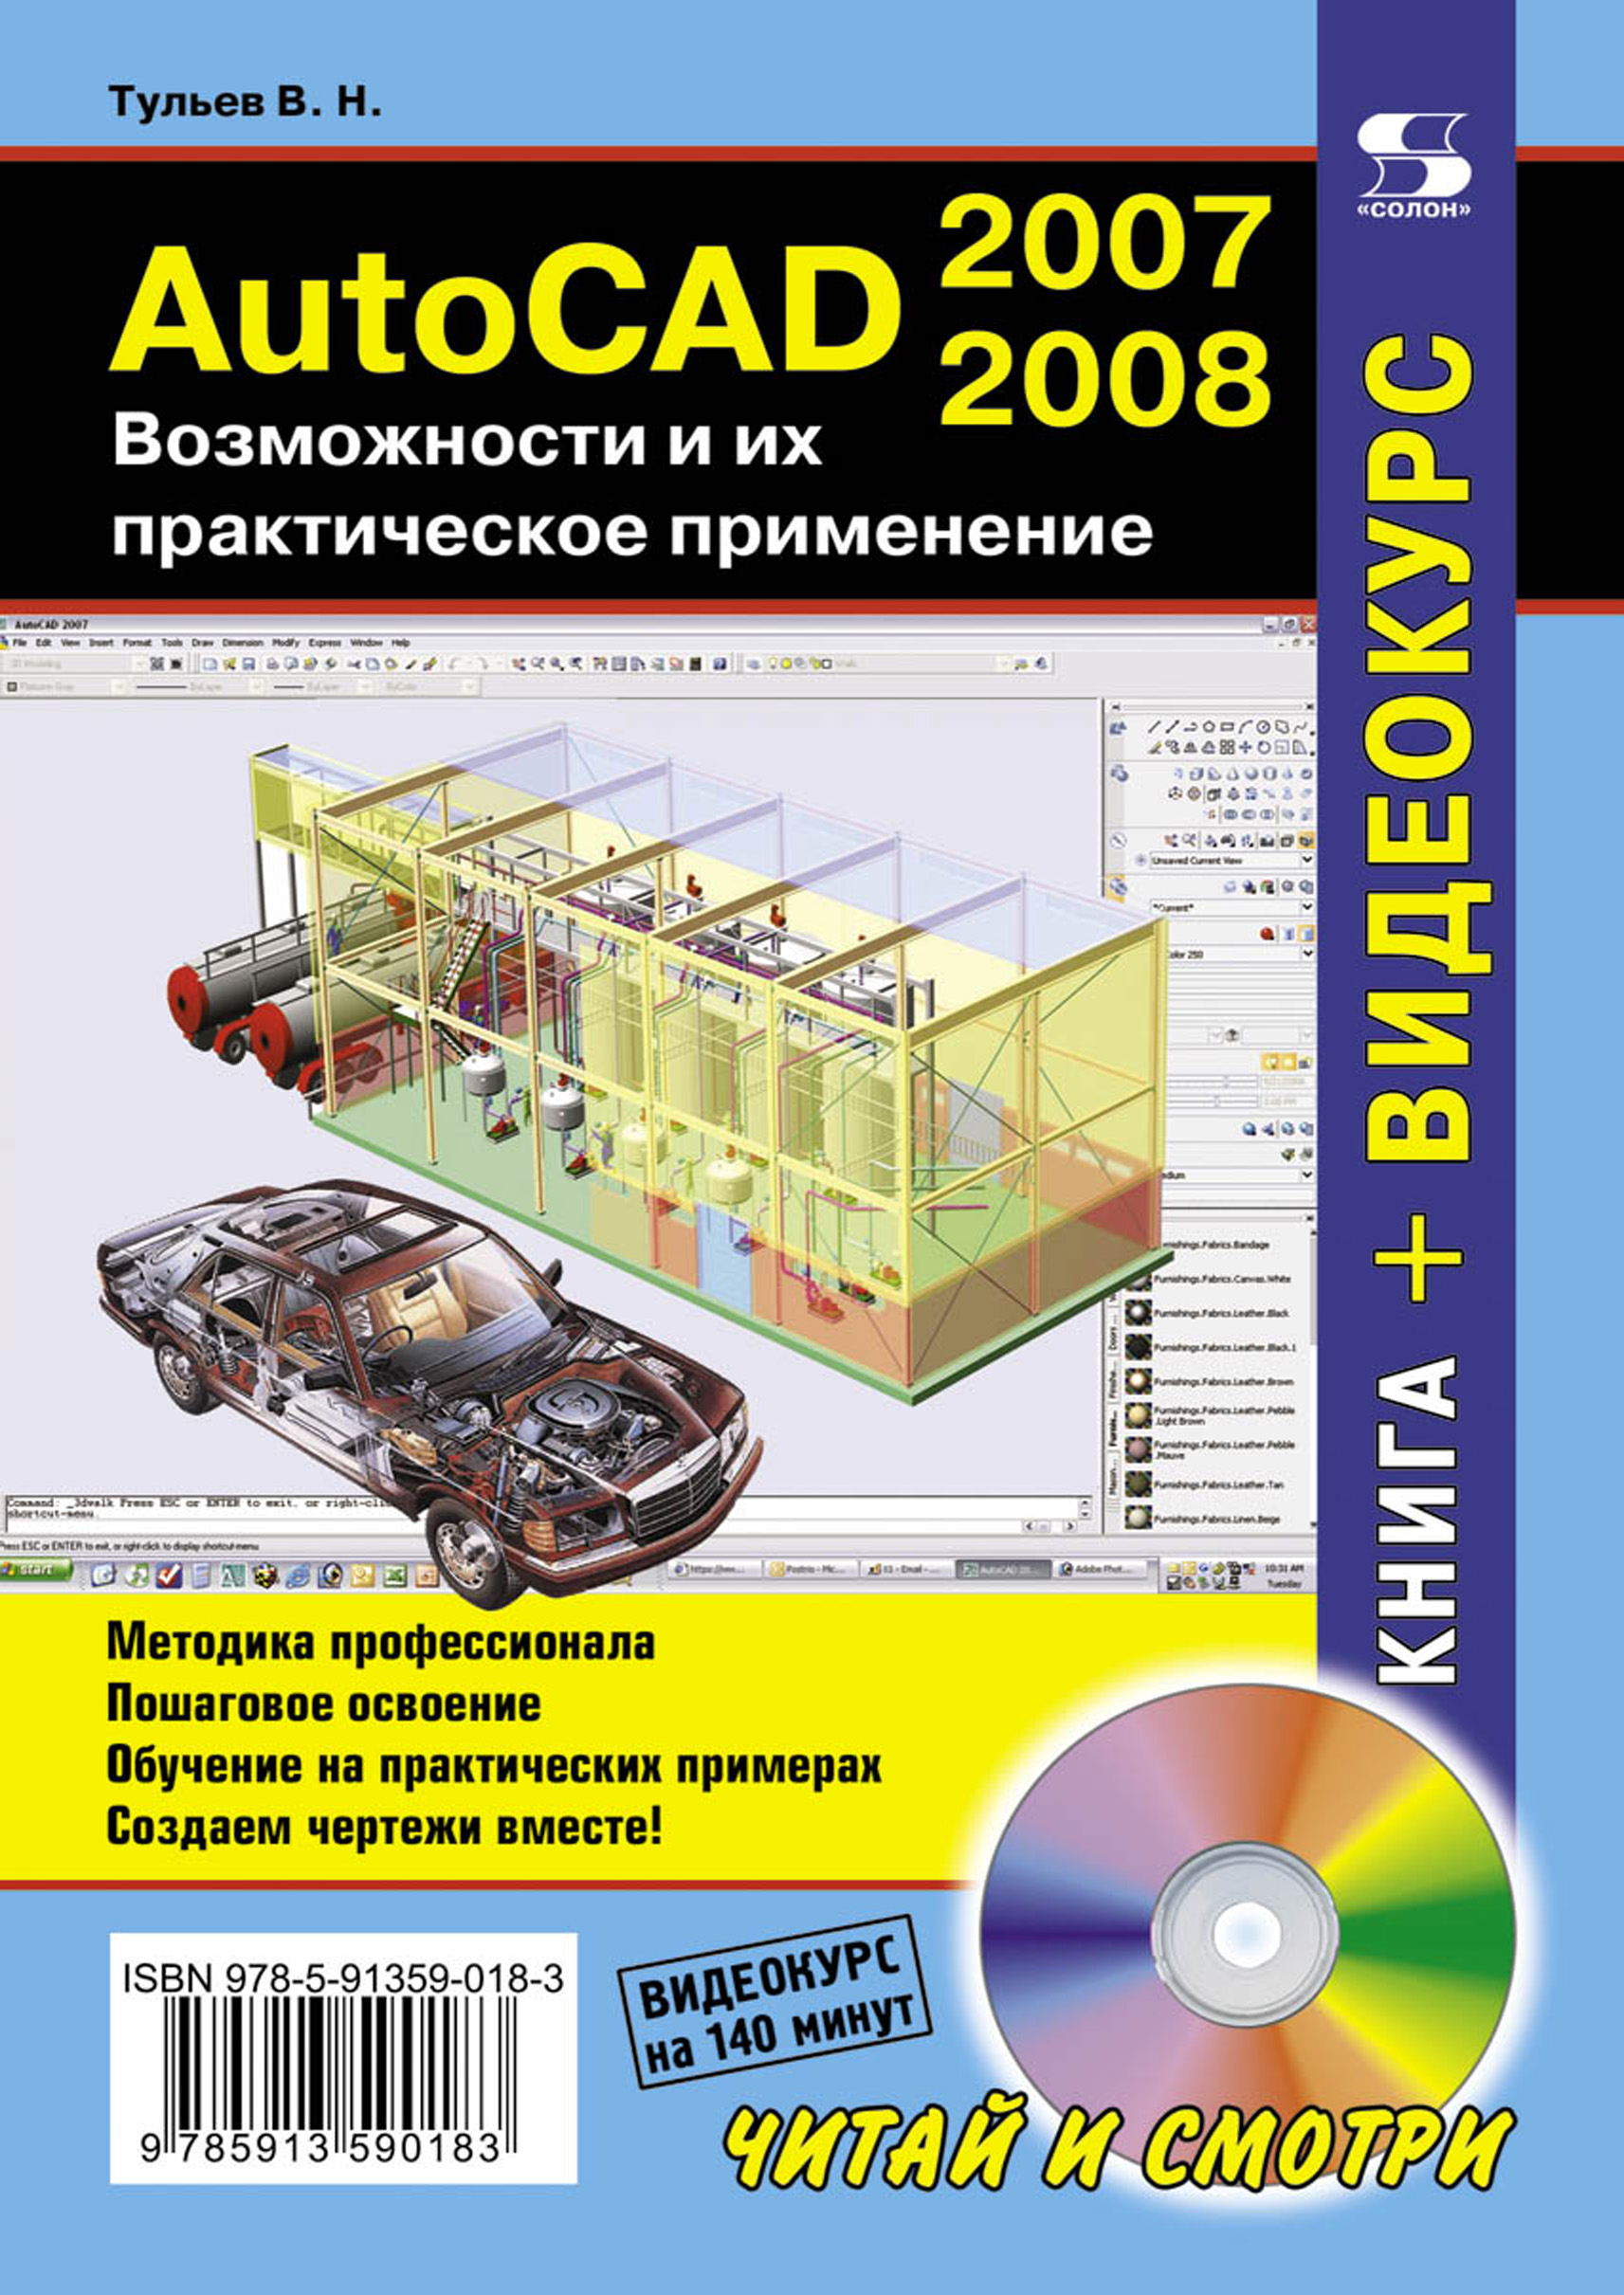 

AutoCAD 2007-2008. Возможности и их практическое применение